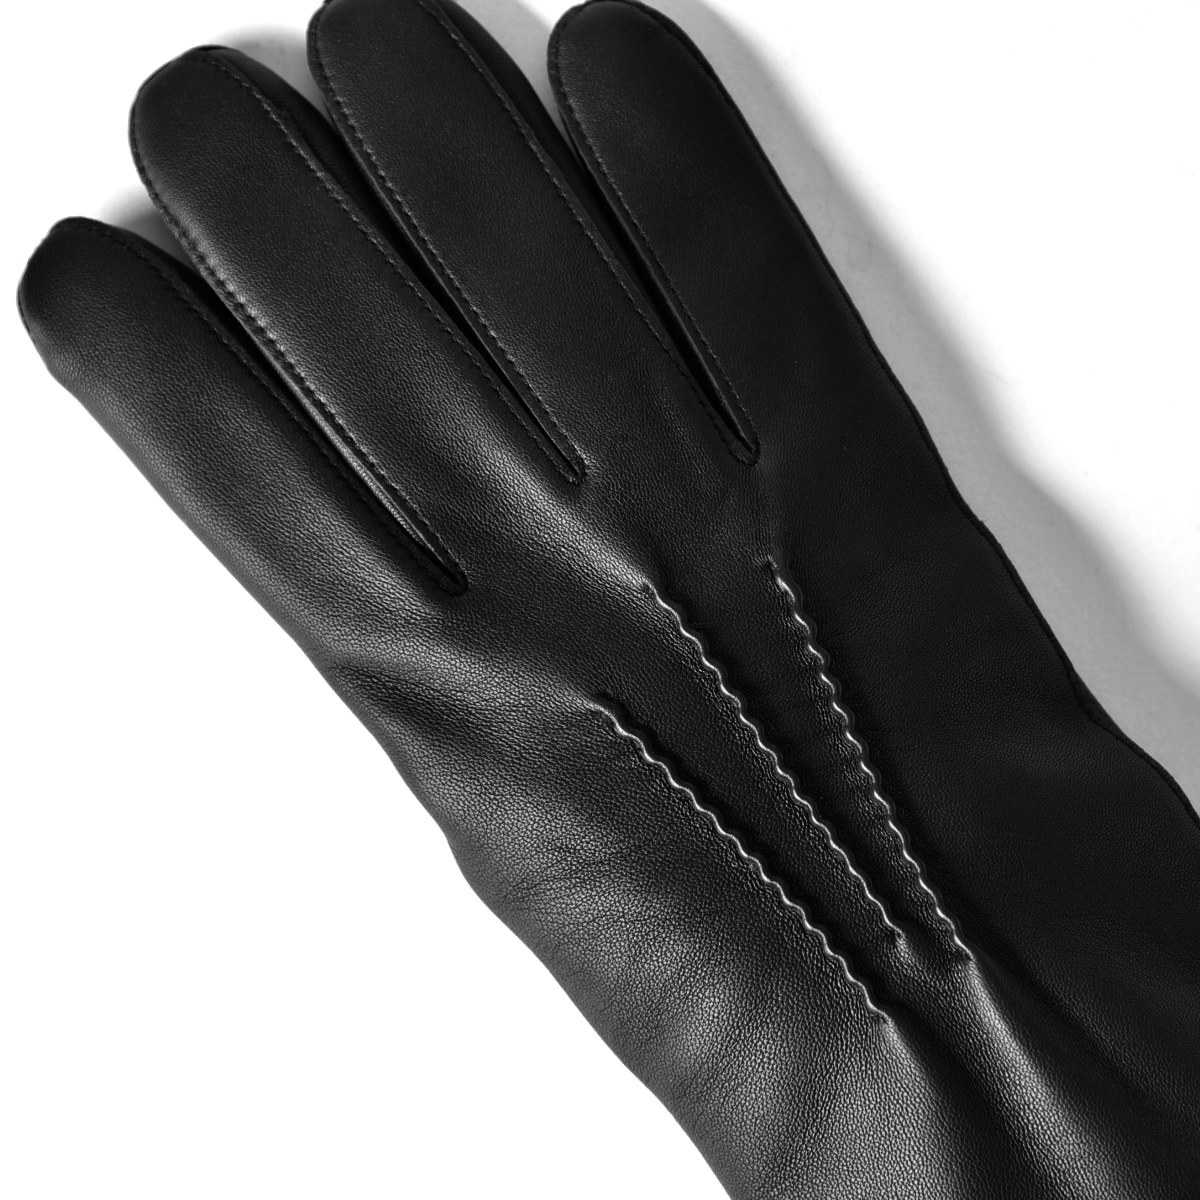 グローブス Gloves 手袋 レザー グローブ メンズ手袋 Ca060l ブラック レザー グローブ ネイビー ブラウン アイボリー オレンジなど全7色 ネコポス対応 本革 グローブ メンズ Grandpere100年続く老舗グローブファクトリーが送るクオリティ抜群のグローブ